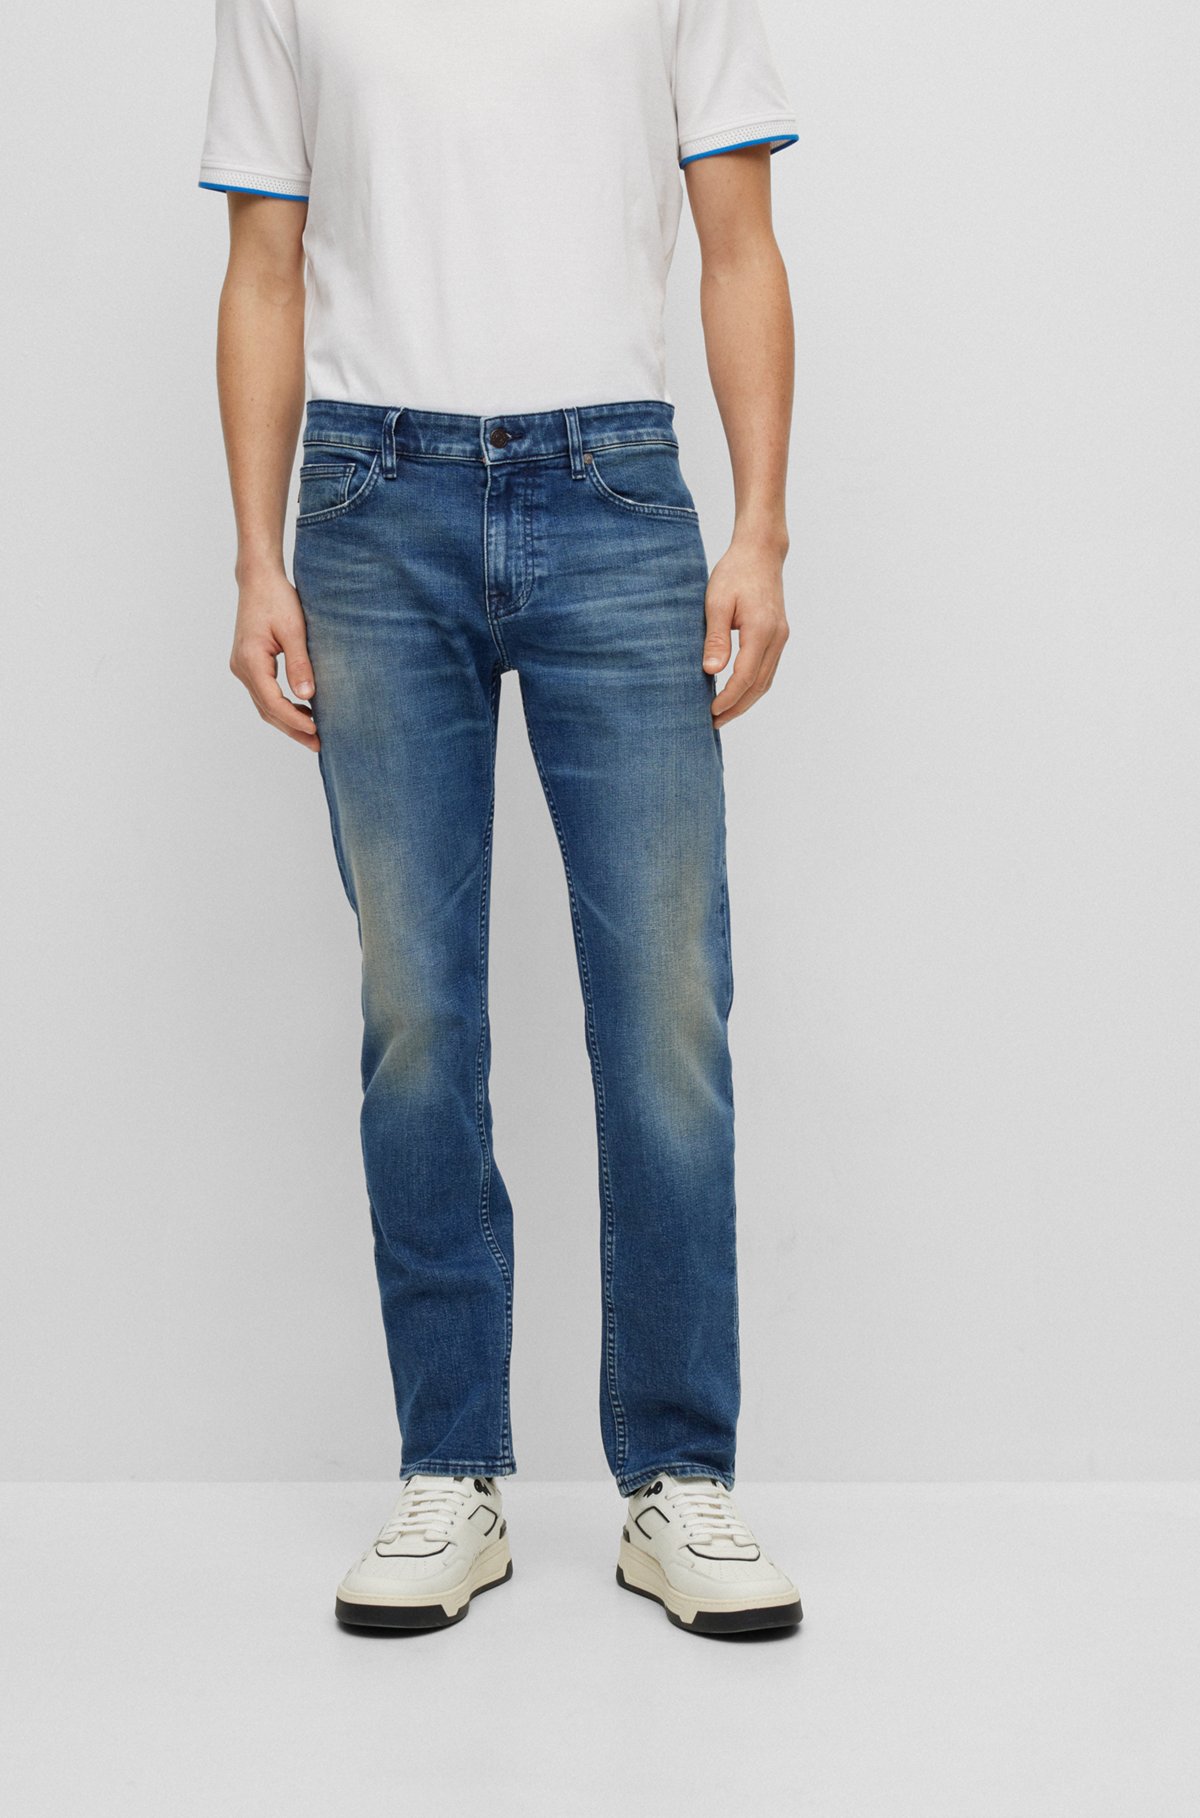 Lave sammentrækning angst BOSS - Slim fit jeans i blå denim med behageligt stræk